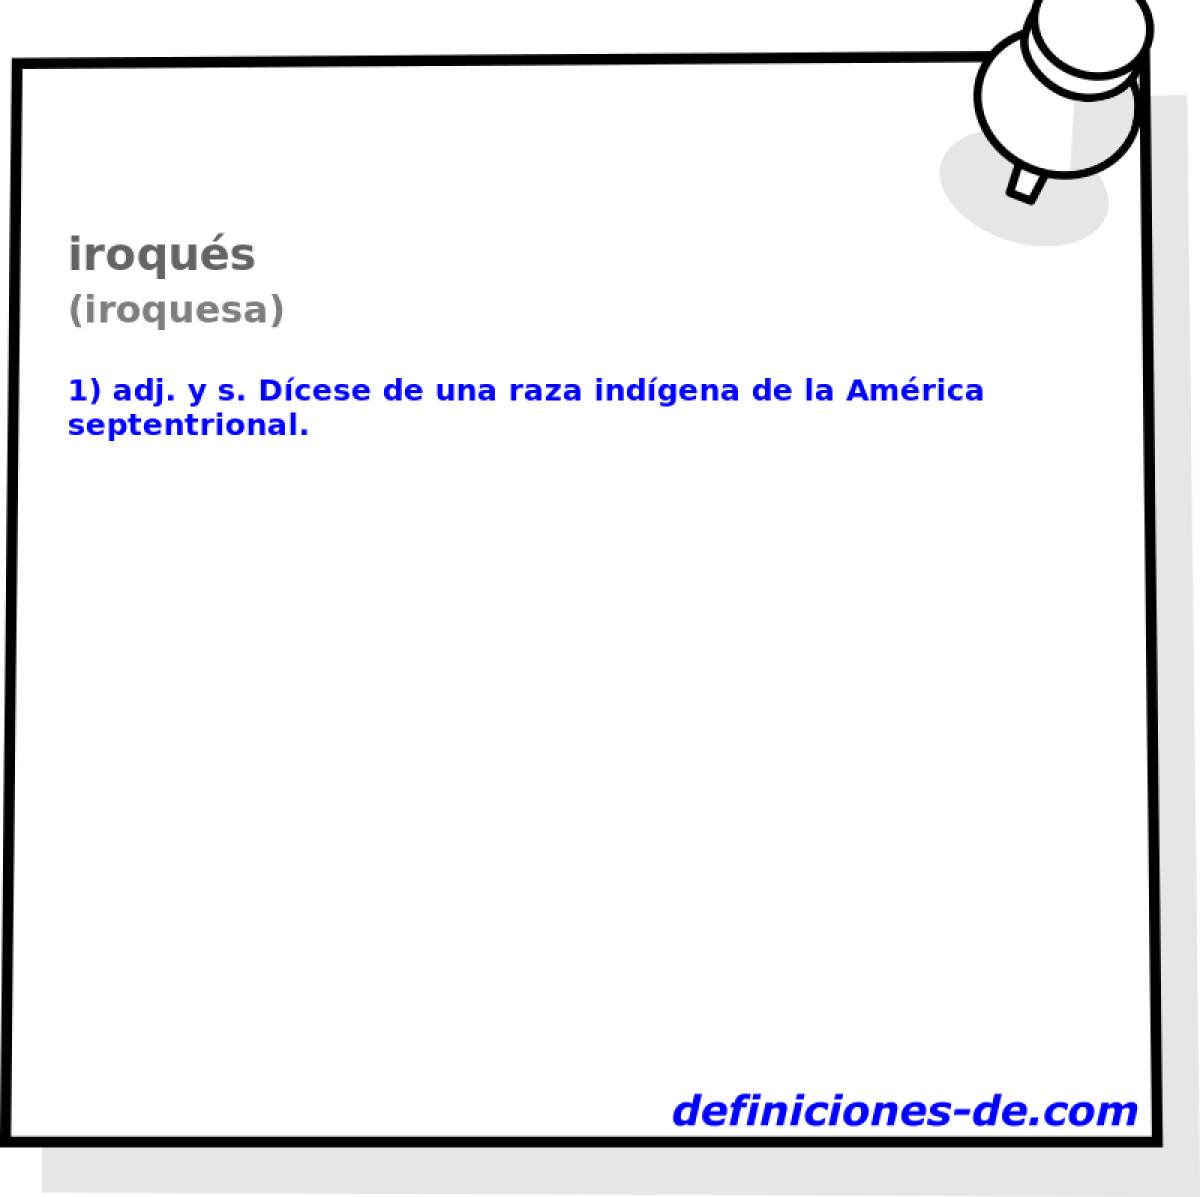 iroqus (iroquesa)